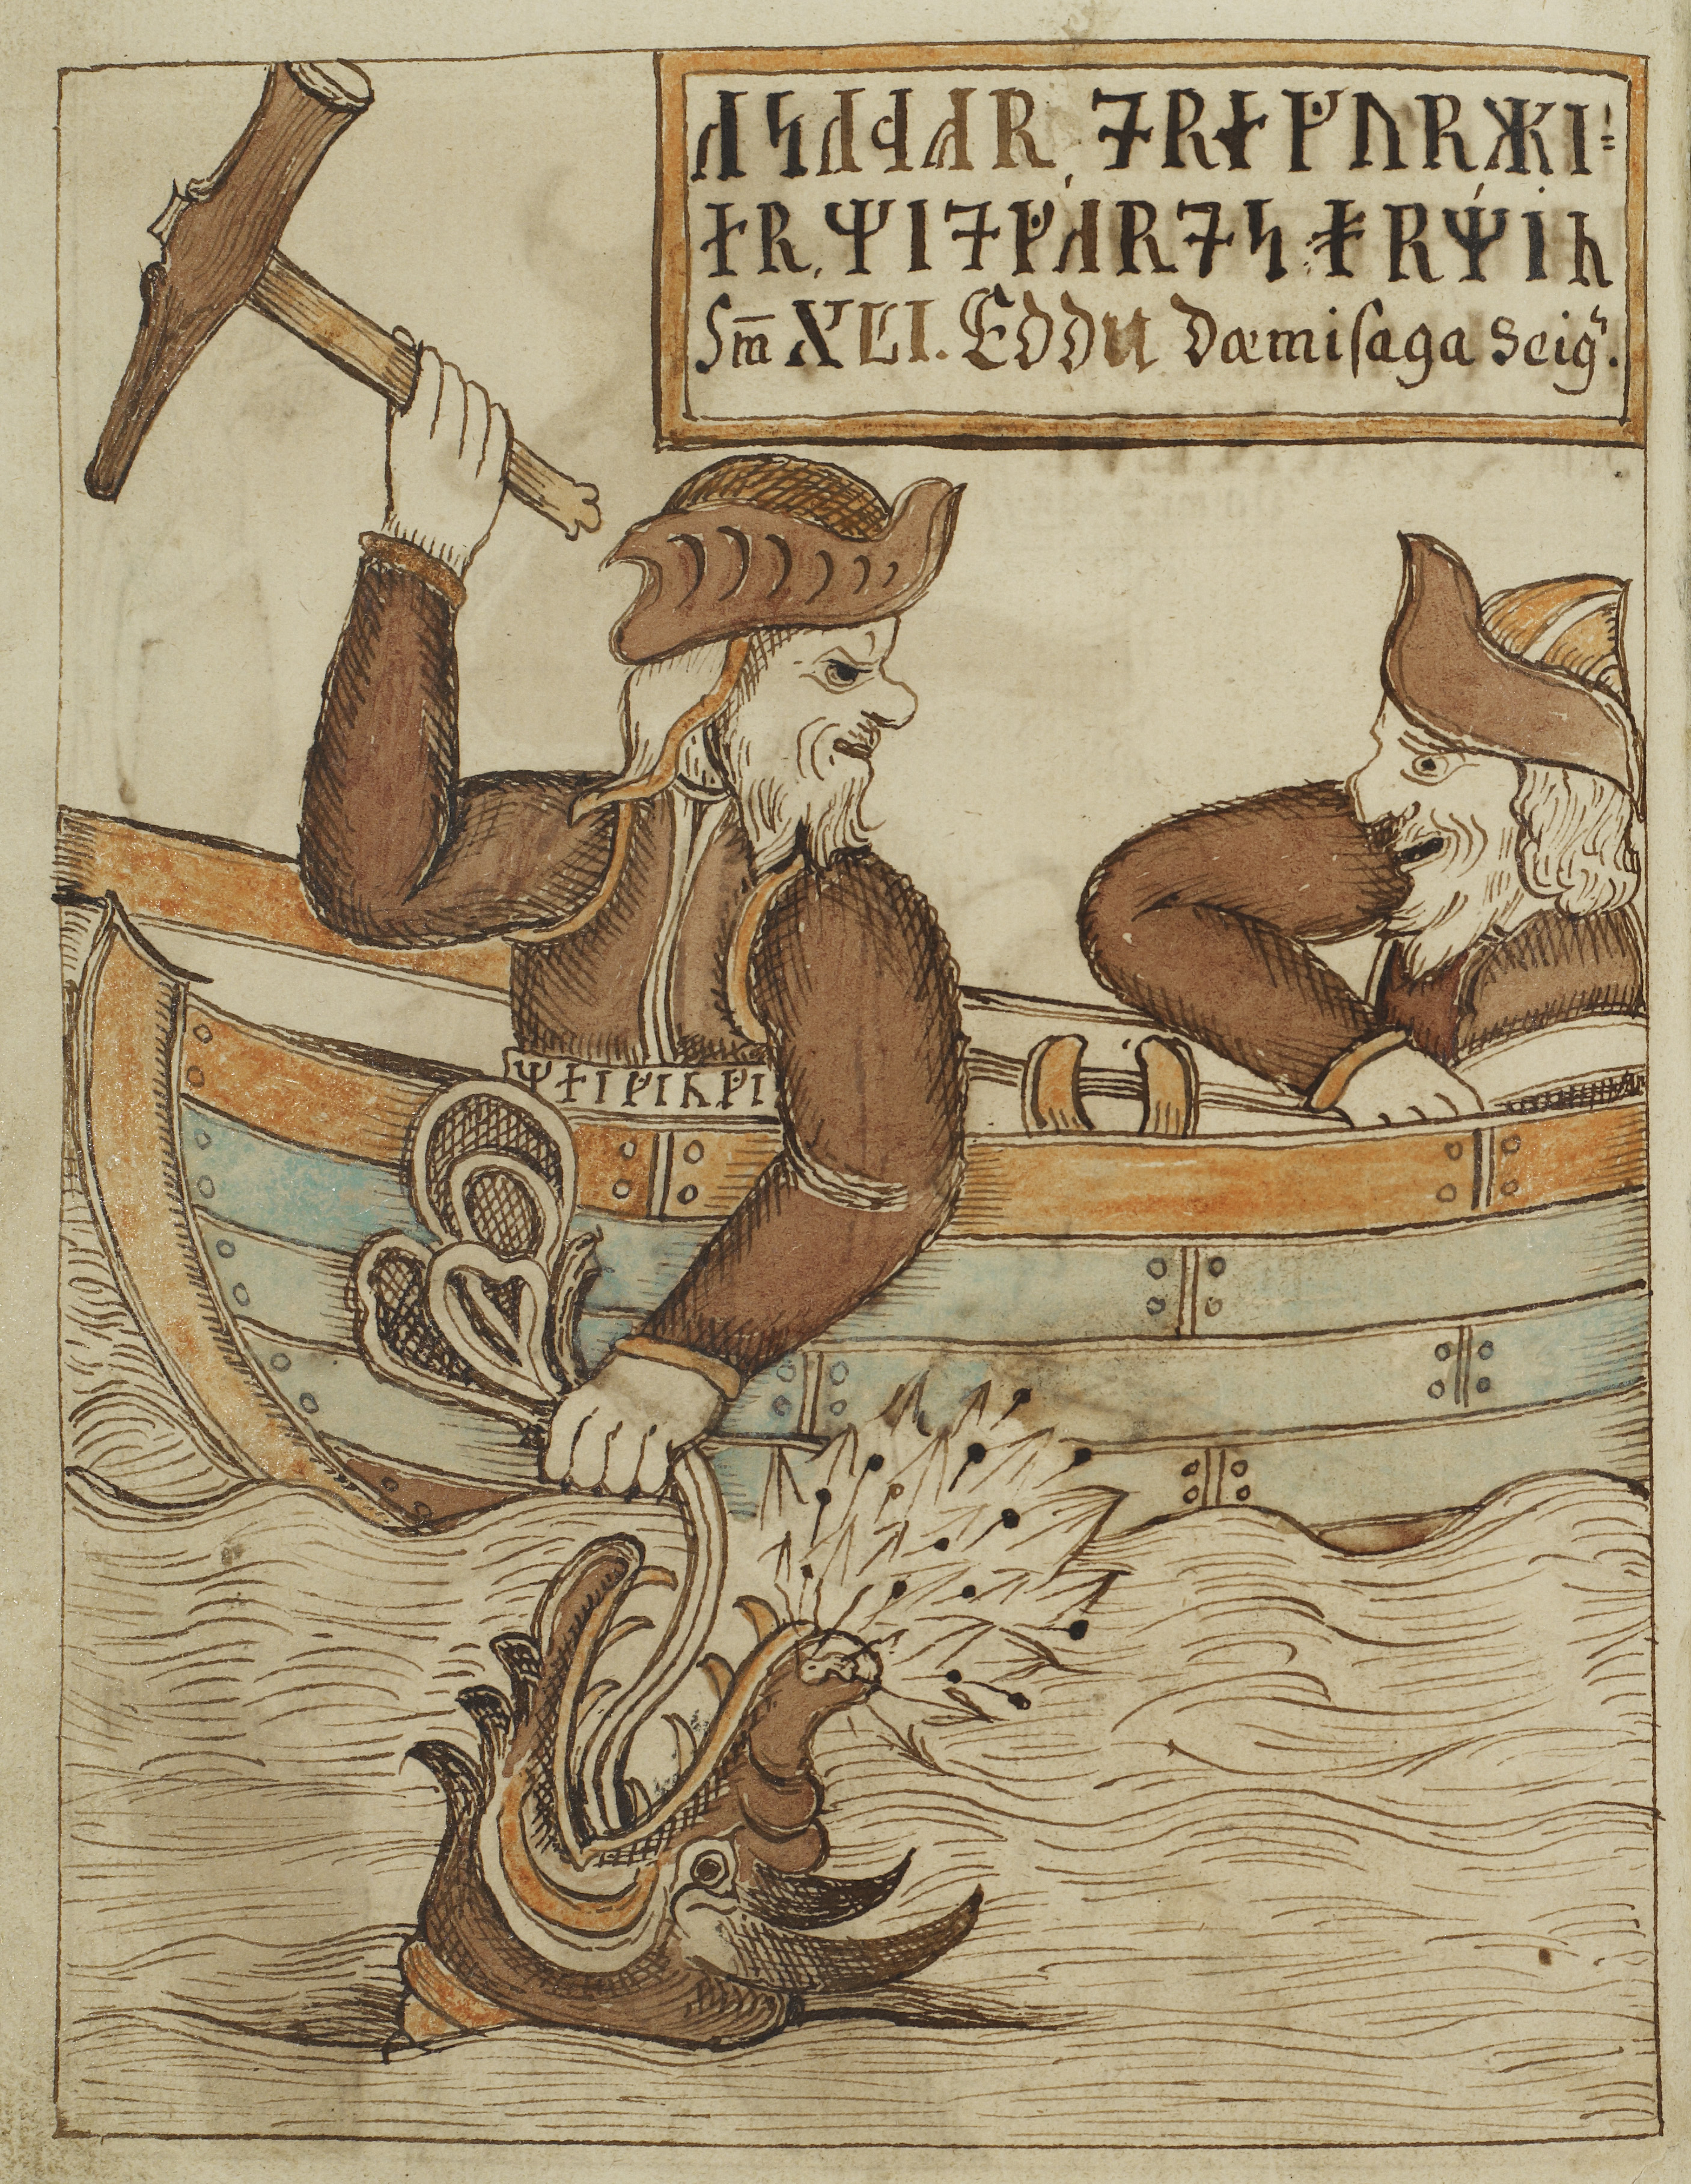 Þórr Fishing for Miðgarðsormr